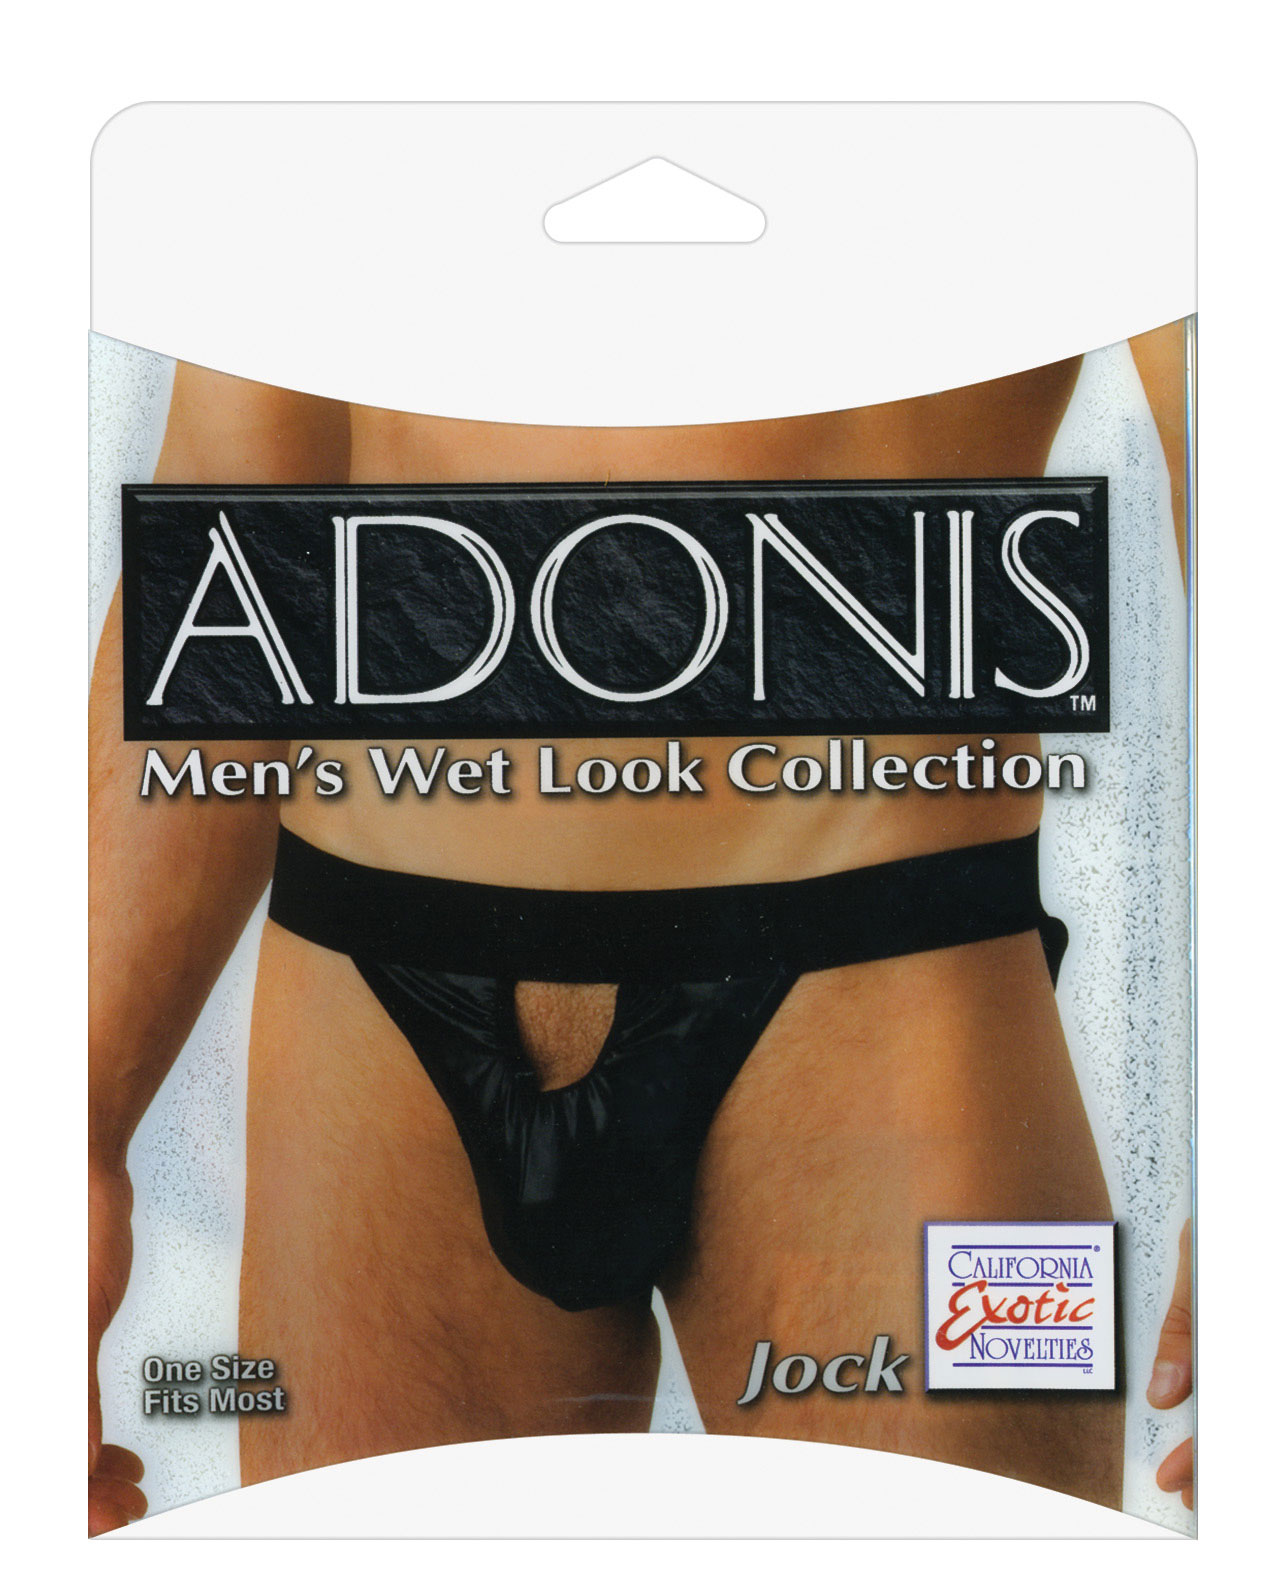 California exotic novelties Men's Adonis mens wet look jock - One Size